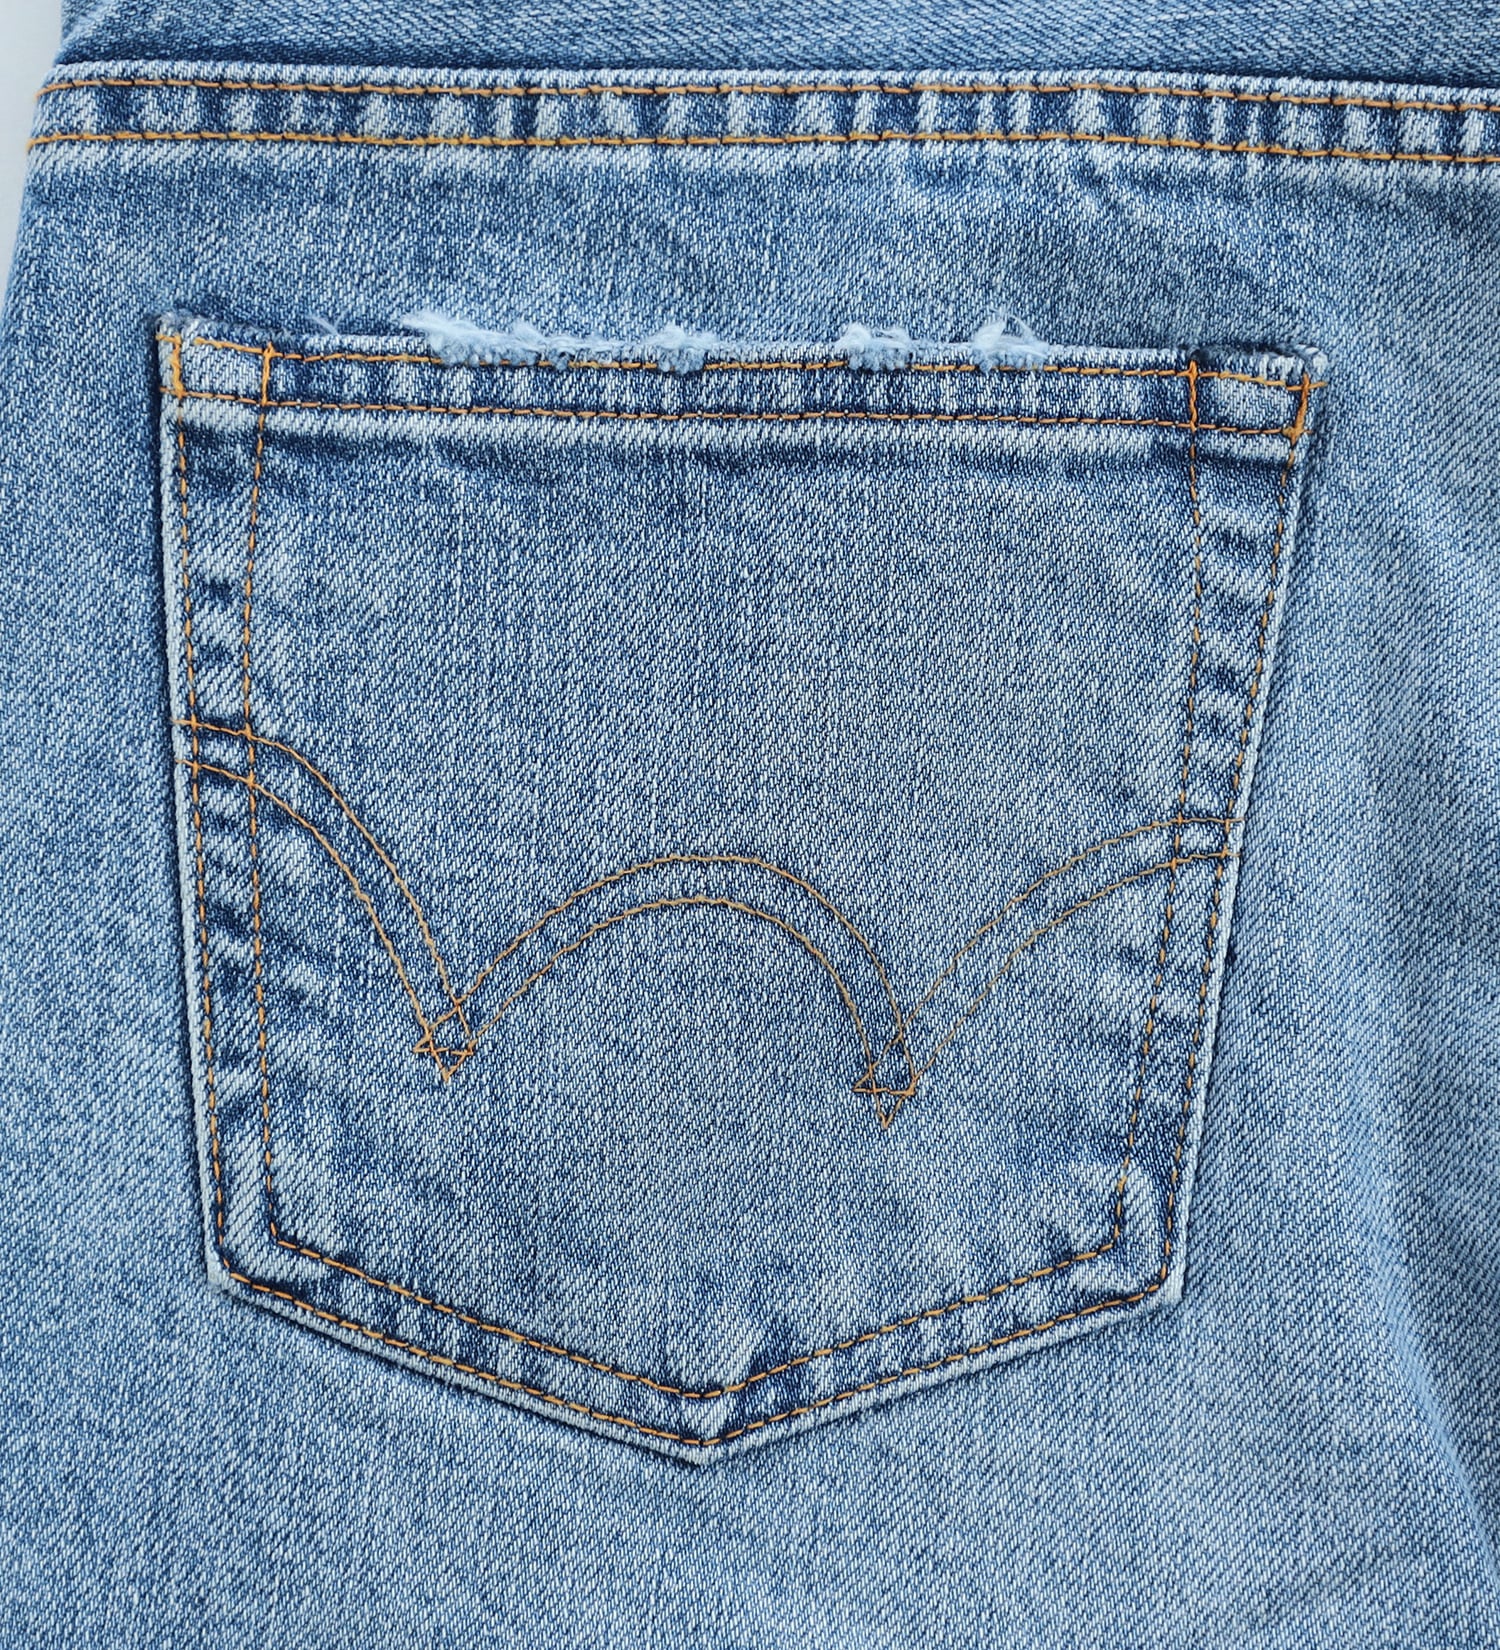 EDWIN(エドウイン)のBOROBORO BLUES ブーツカット デニムパンツ ダメージ フレア 日本製 MADE IN JAPAN|パンツ/デニムパンツ/メンズ|淡色ブルー